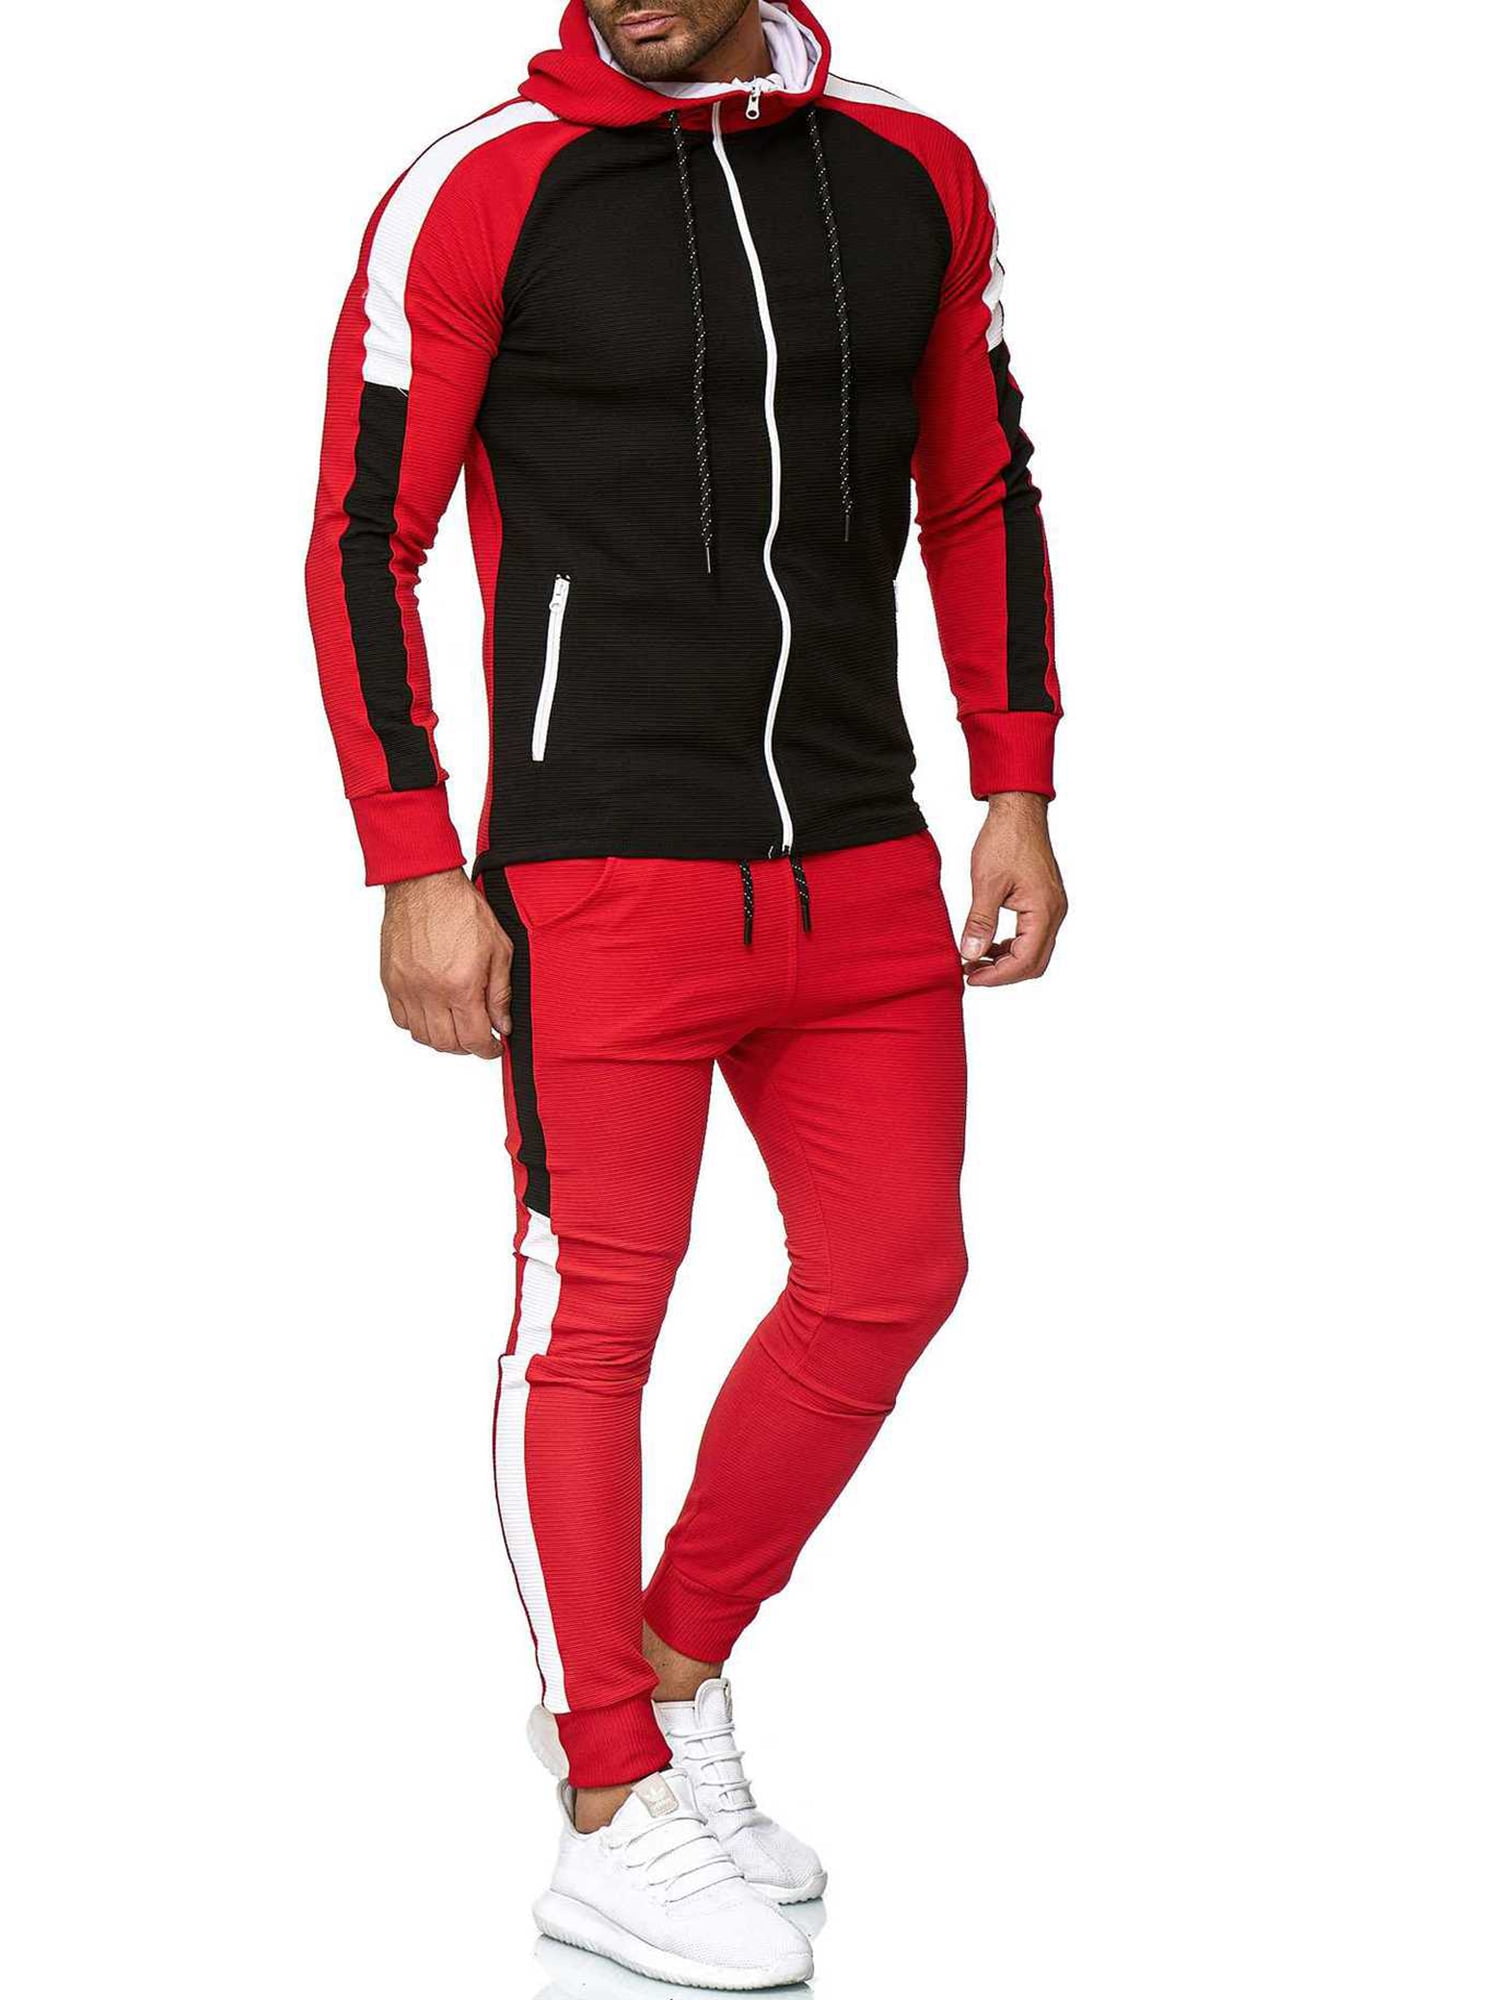 Tracksuit Men,Casual Outfit Athletic Sweatsuits for Men Jogging Suits Sets 2 pcs 